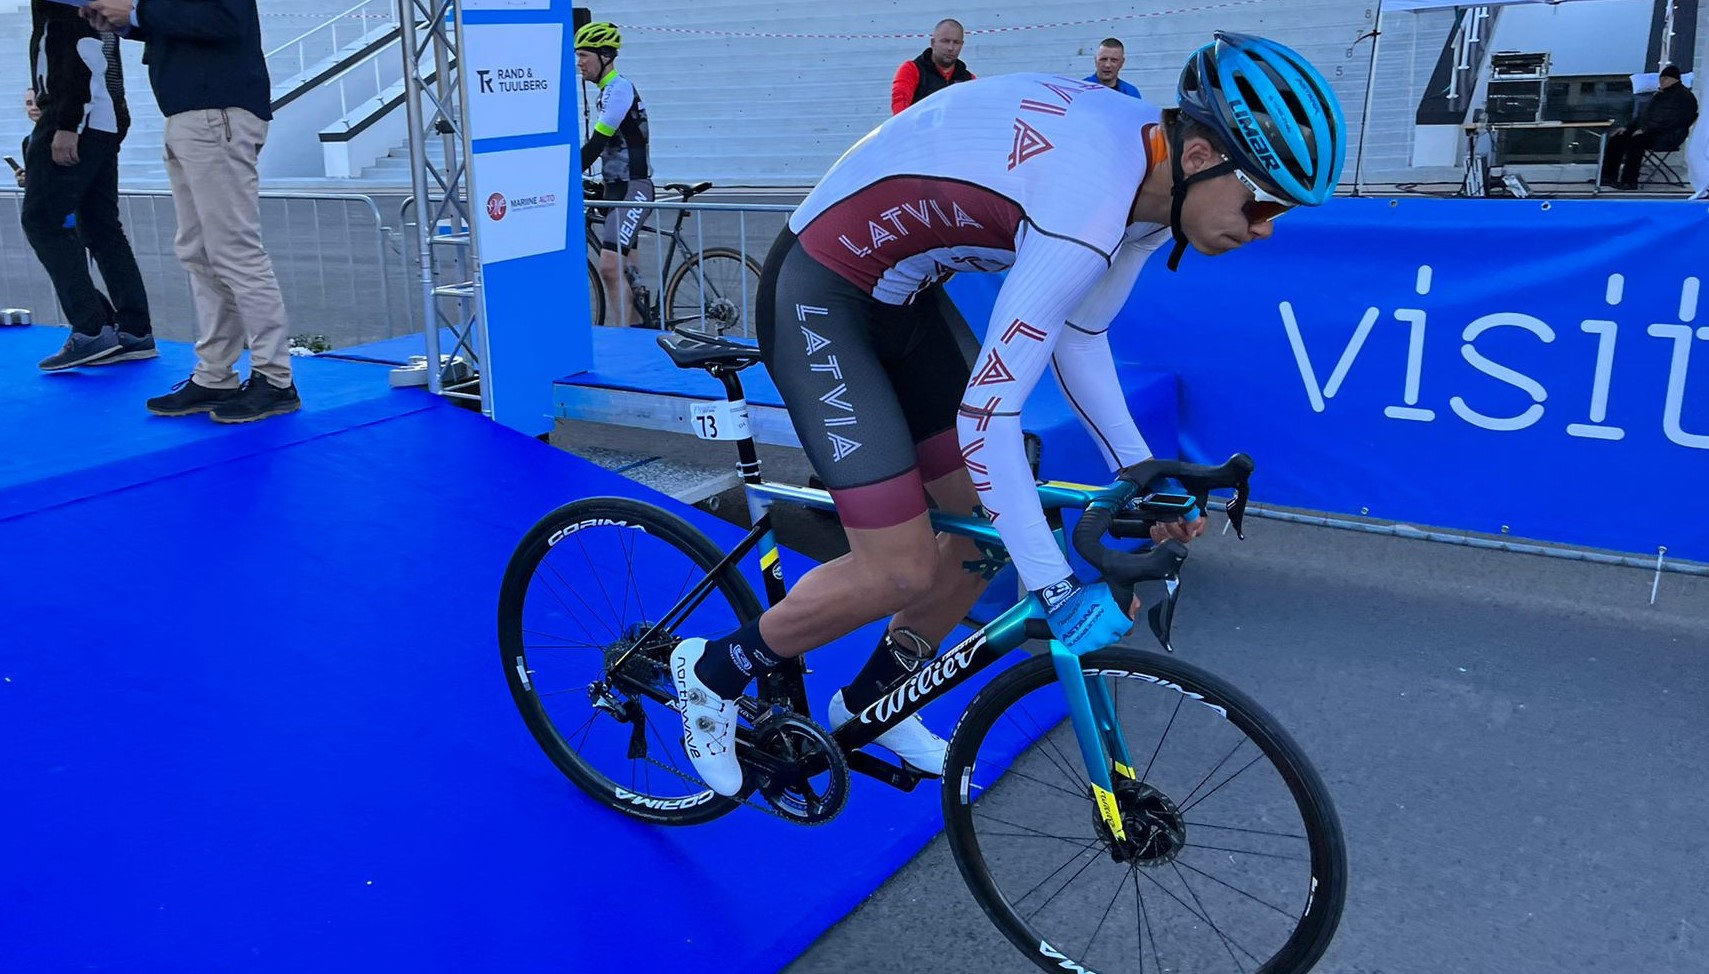 “Astana” šogad debitējušais Kaļveršs izcīna 8. vietu “Tour of Estonia” ievadā